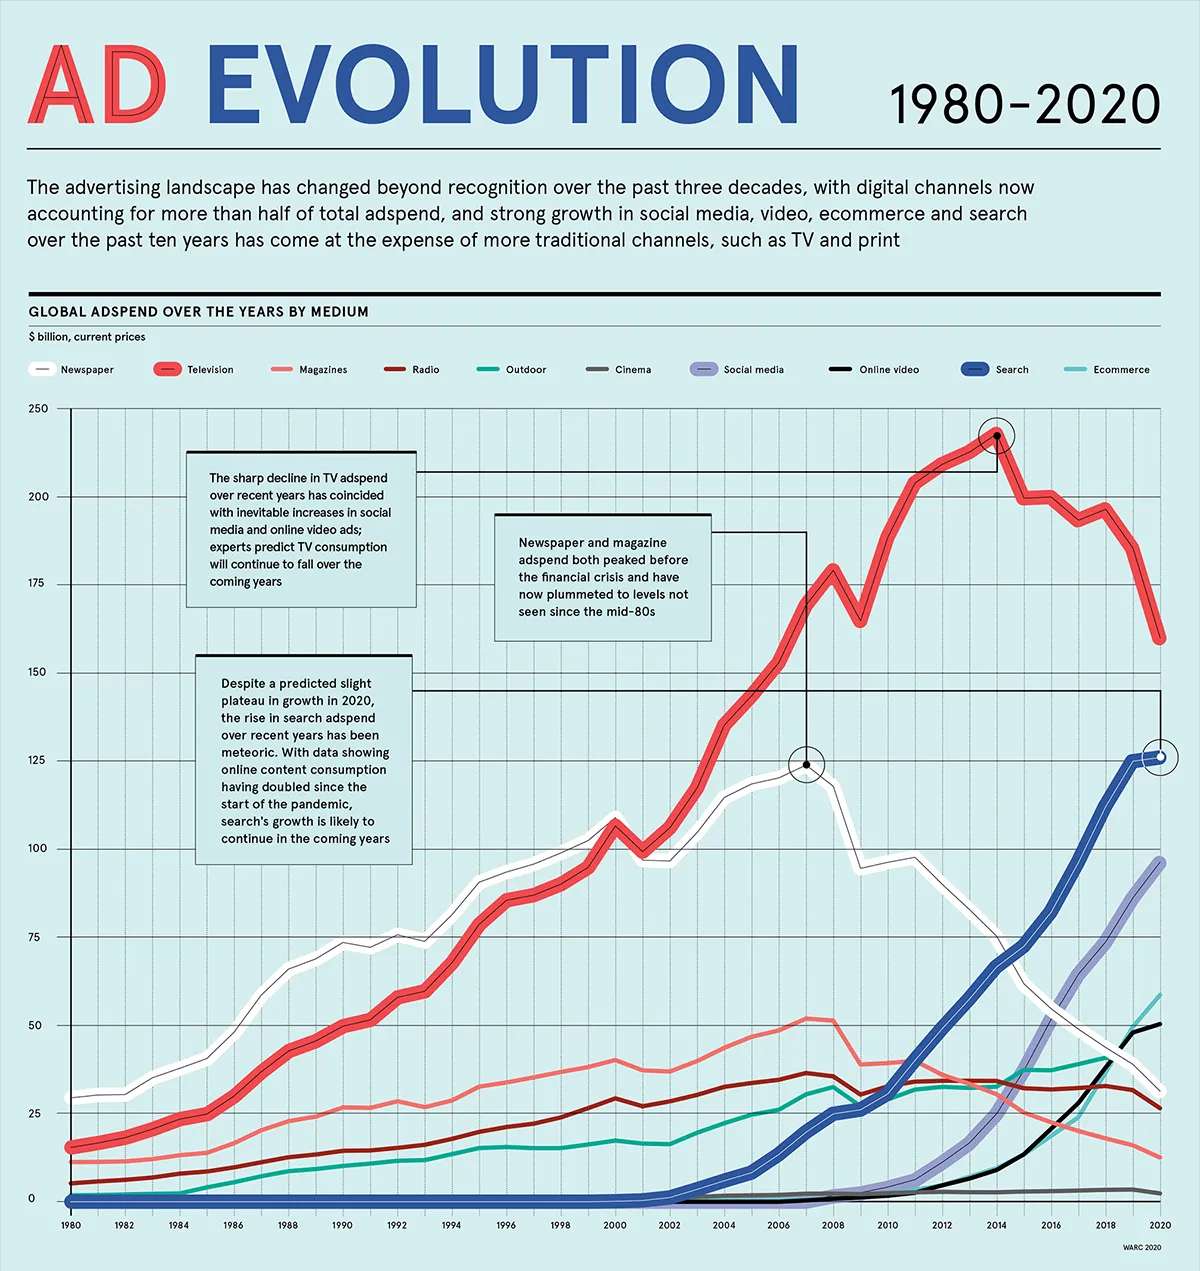 标题为“AD EVOLUTION 1980-2020”的折线图展示了多年来全球广告支出在不同媒介上的变化，线条代表不同的广告渠道。图表中可以看到，像社交媒体、在线视频、搜索和电子商务等数字渠道的广告支出显著增长，而报纸、电视和杂志等传统渠道的广告支出则出现了明显的下降或停滞。